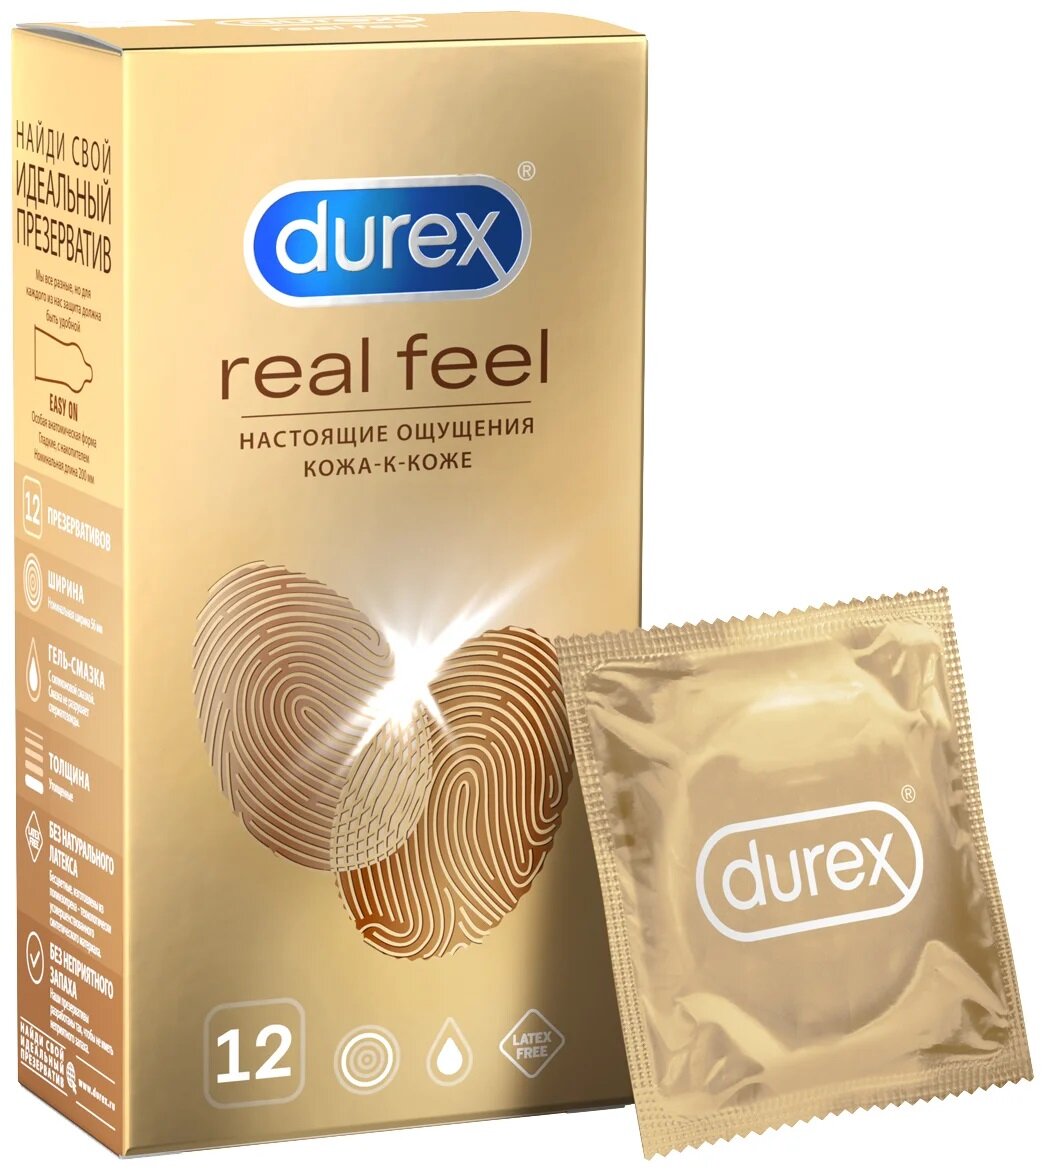 751 Durex Real Feel, 12 шт. Презервативы максимально естественные ощущения. Упаковка по 12 шт.